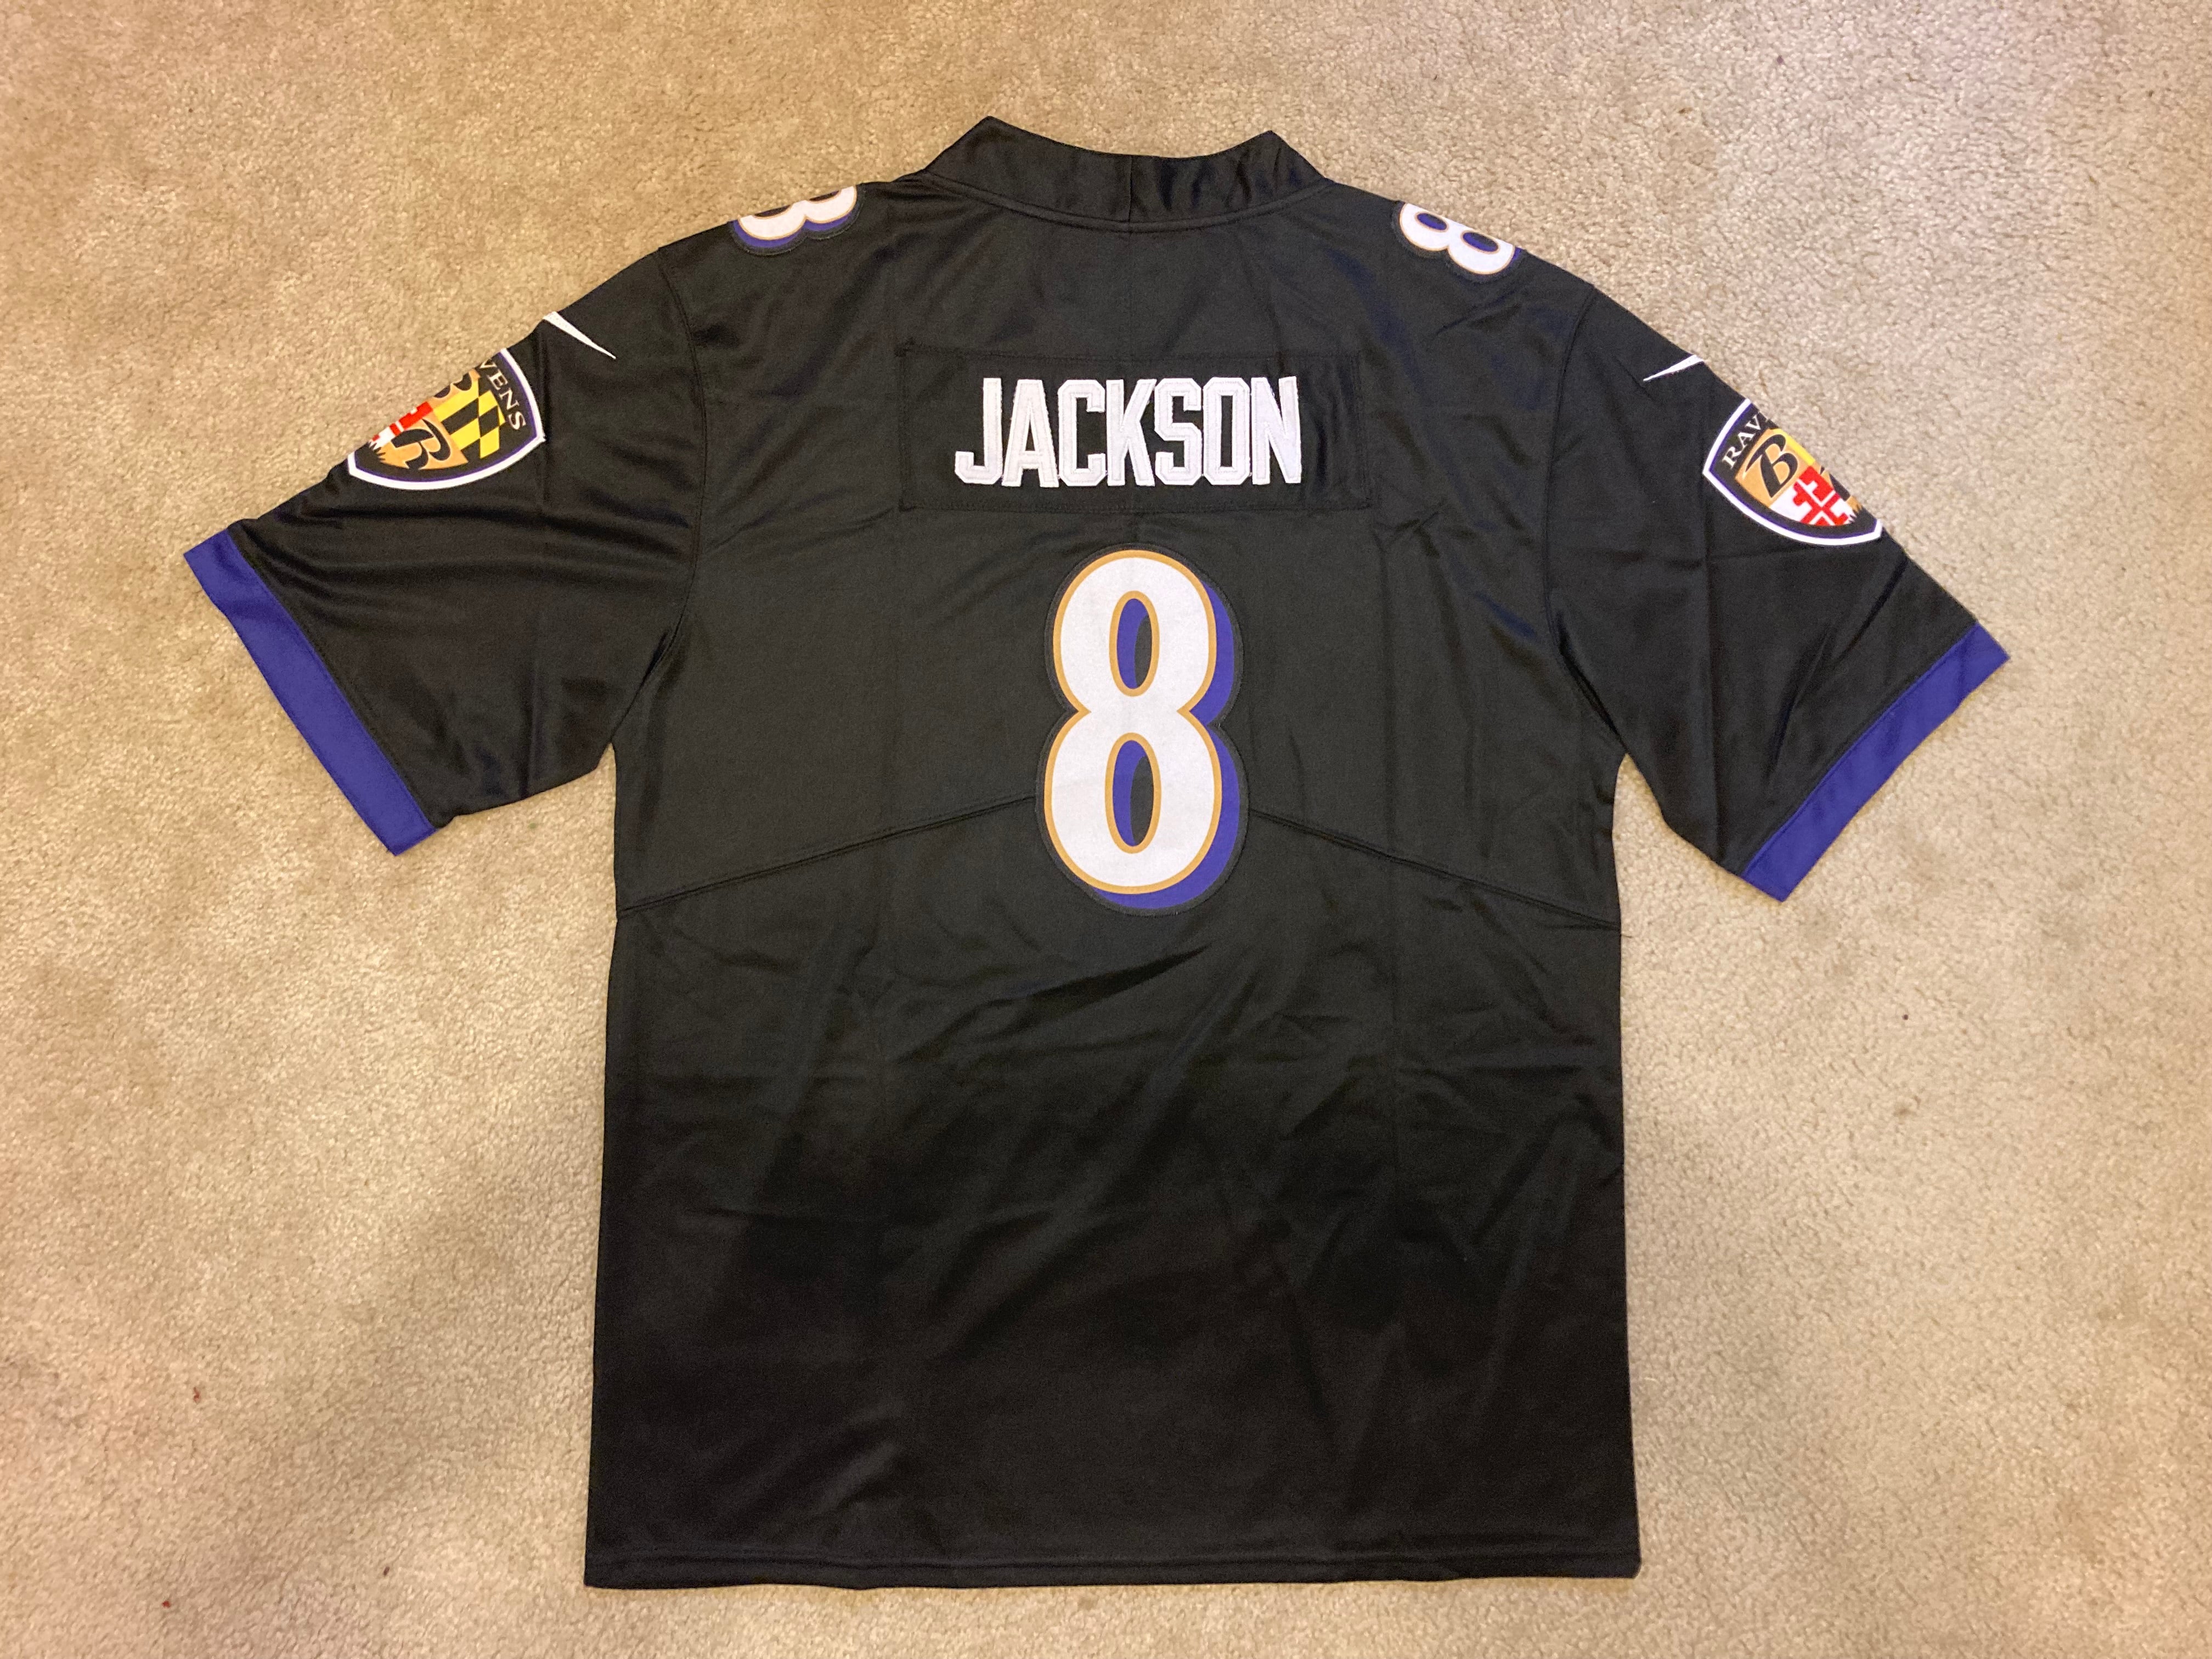 Men's Nike Lamar Jackson Purple Baltimore Ravens Game Player Jersey